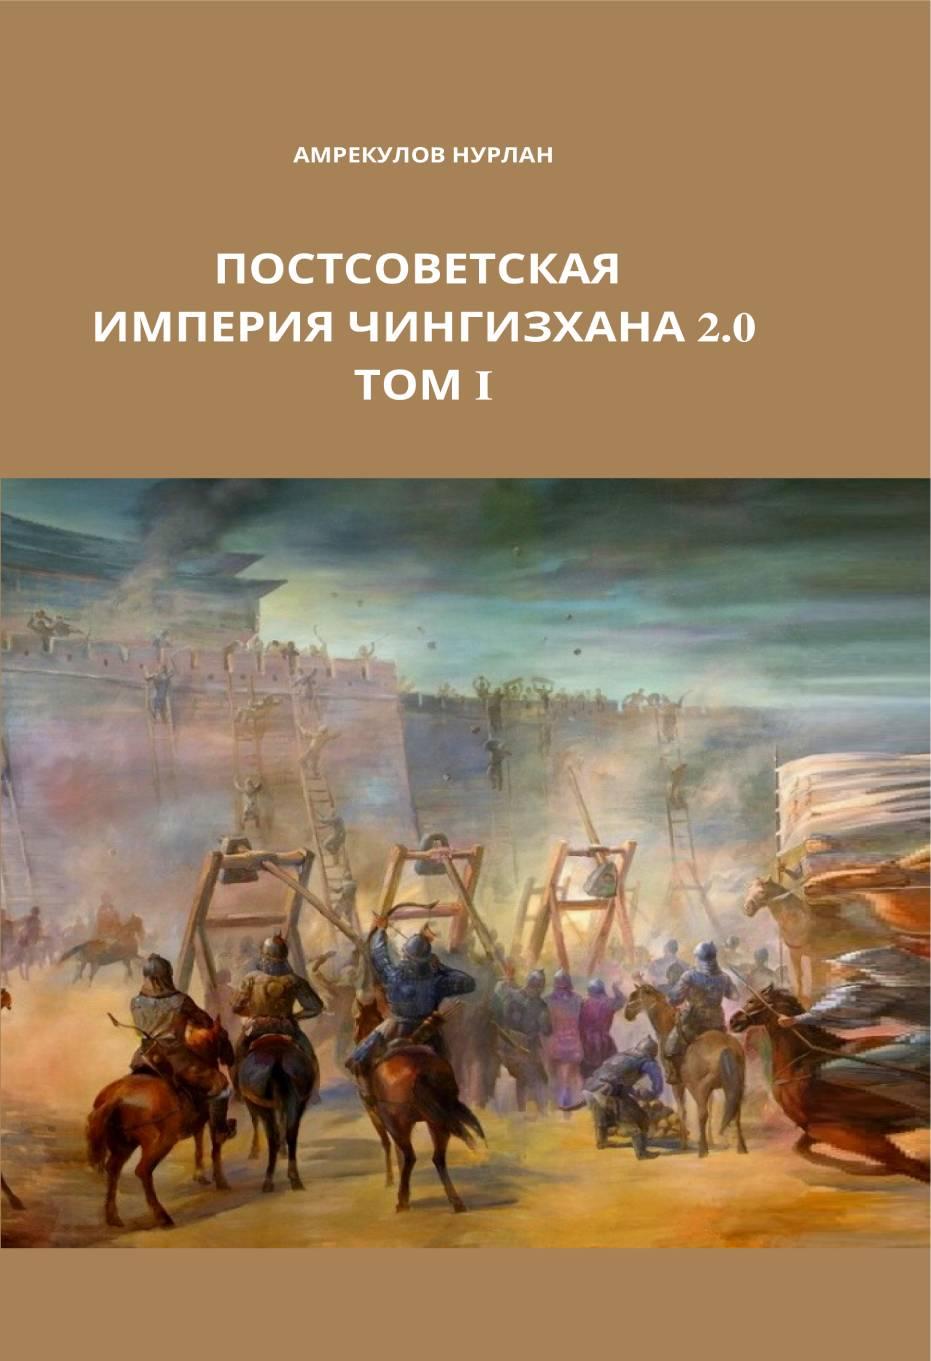 Постсоветская империя Чингисхана 2.0. ТОМ I: книга.